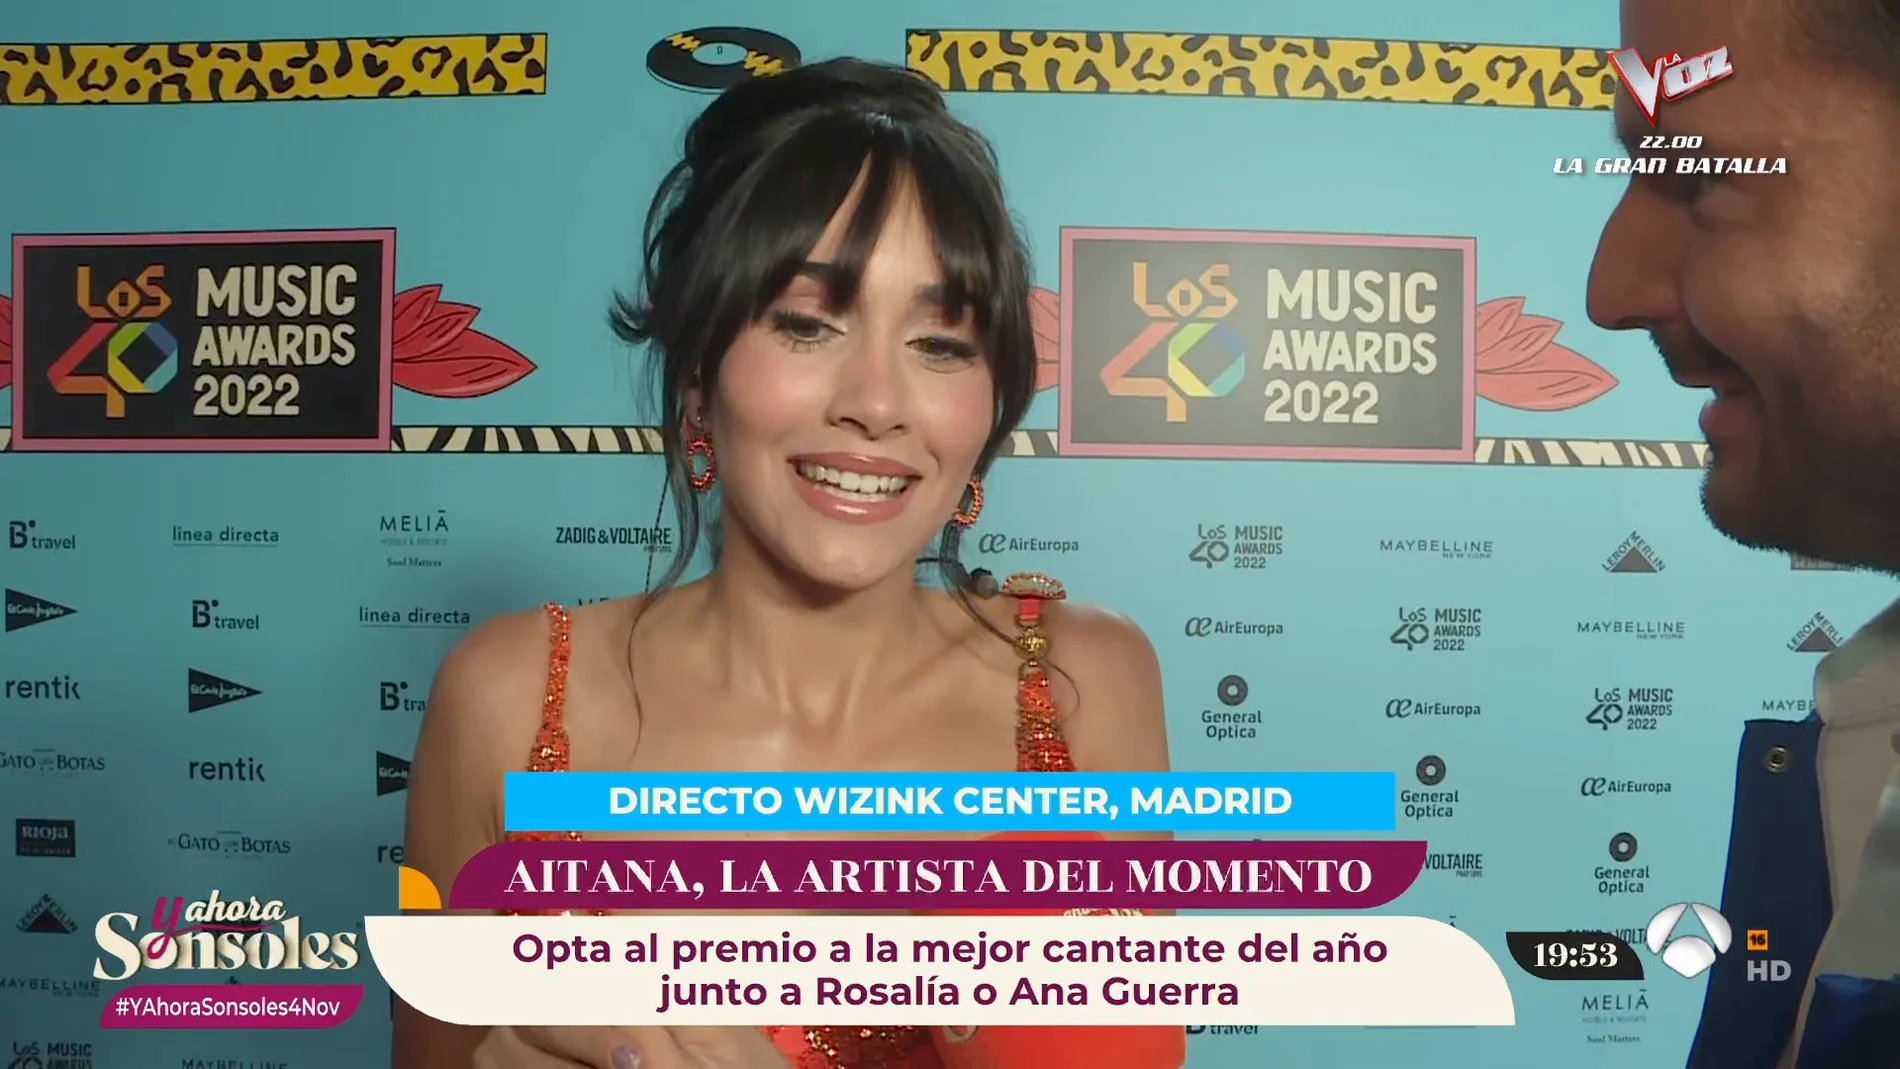 Aitana, ante su gran noche en Los 40 Music Awards: “Es muy bonito que vengan familias a verme"